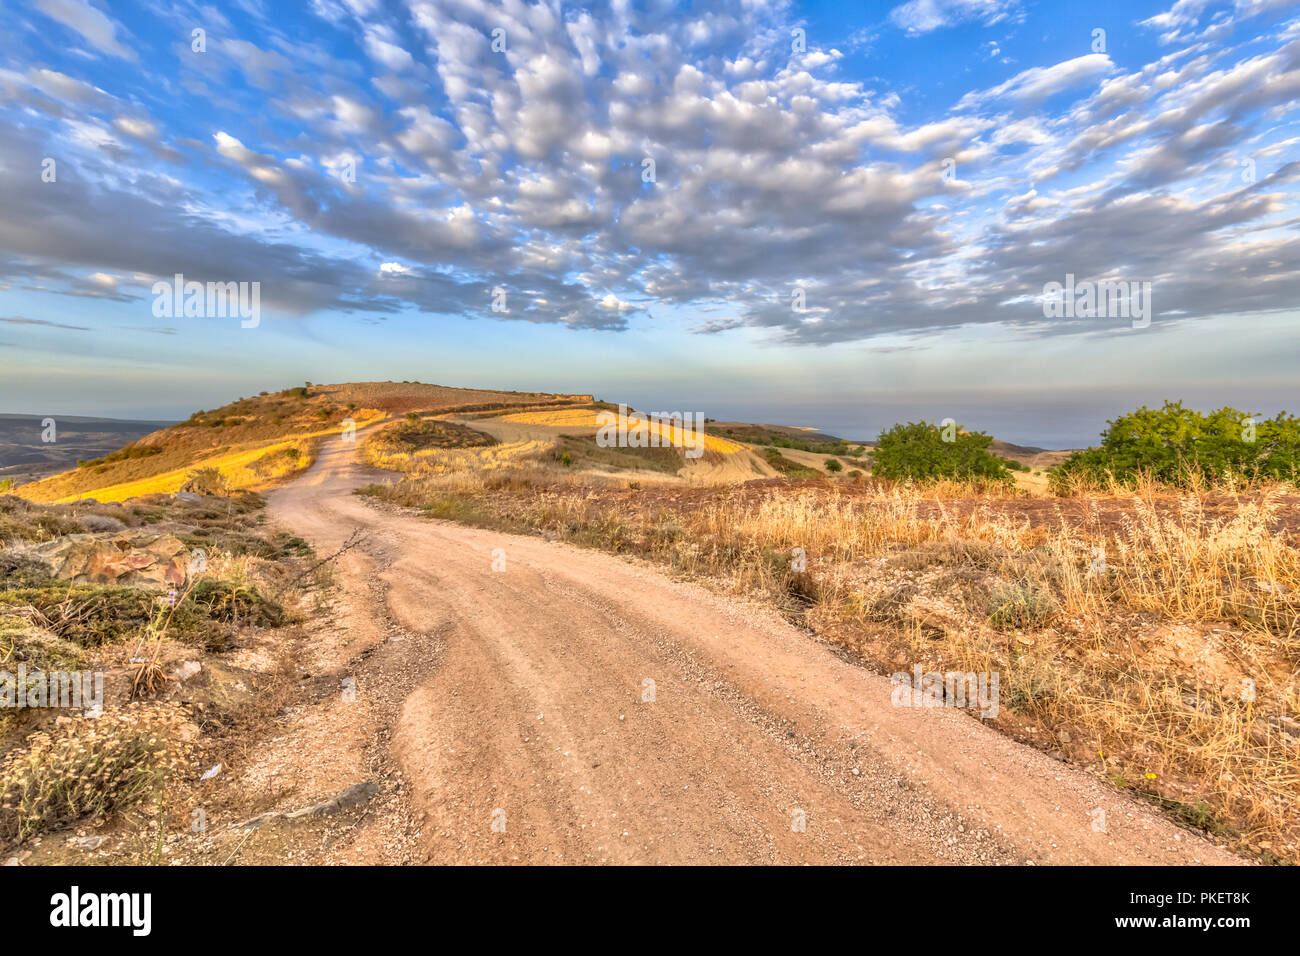 Straße durch die hügelige Landschaft auf der Insel Zypern mit Blick auf das Meer im Hintergrund. Die heiße semi-ariden Klima hat die BSh entsprechende chemische Stockfoto